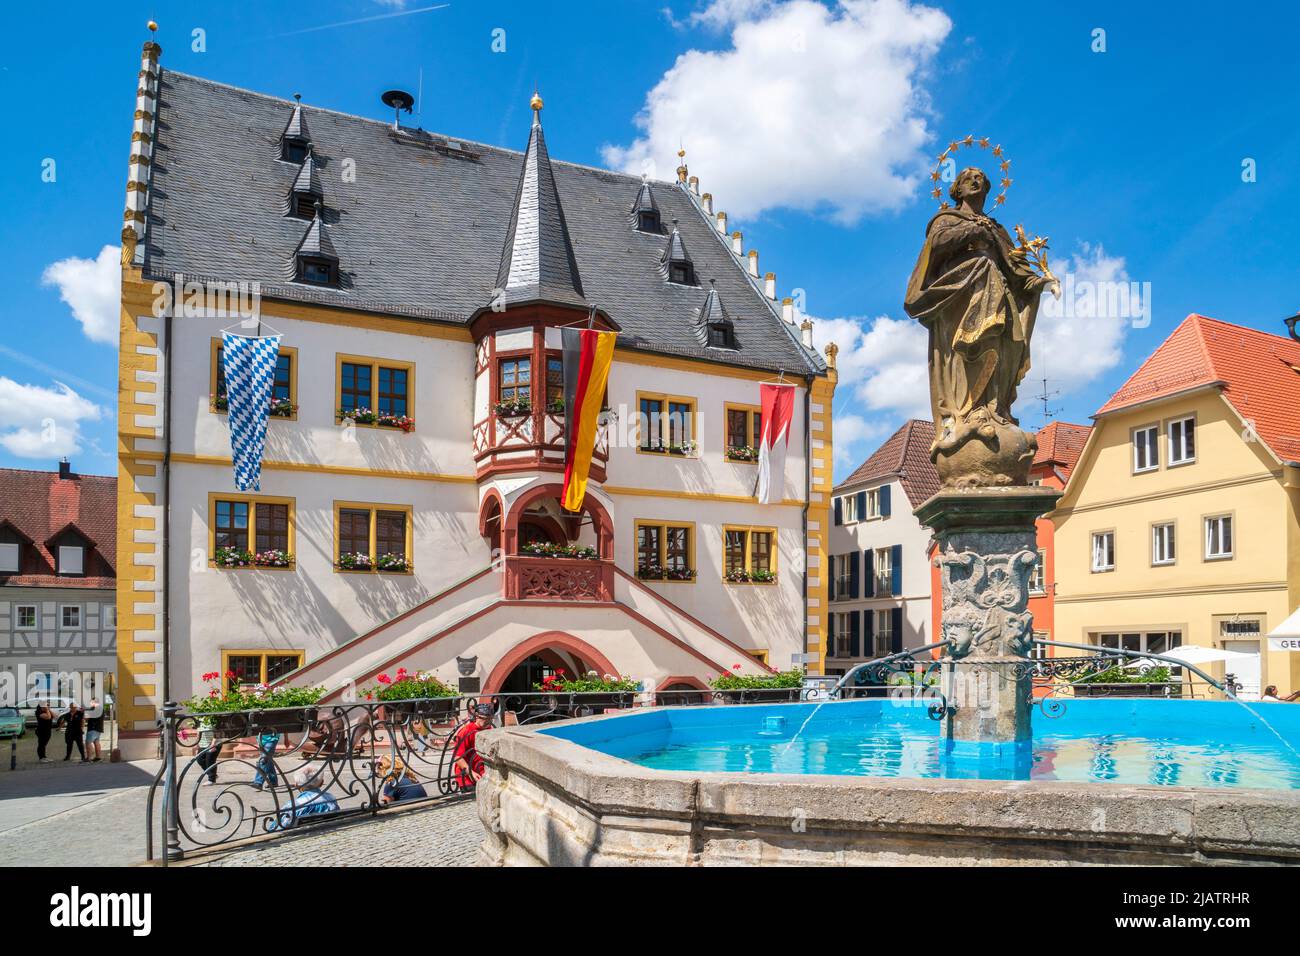 Die historische Altstadt von Volkach am Main in Unterfranken mit Rathaus und Brunnen am Marktplatz Stock Photo